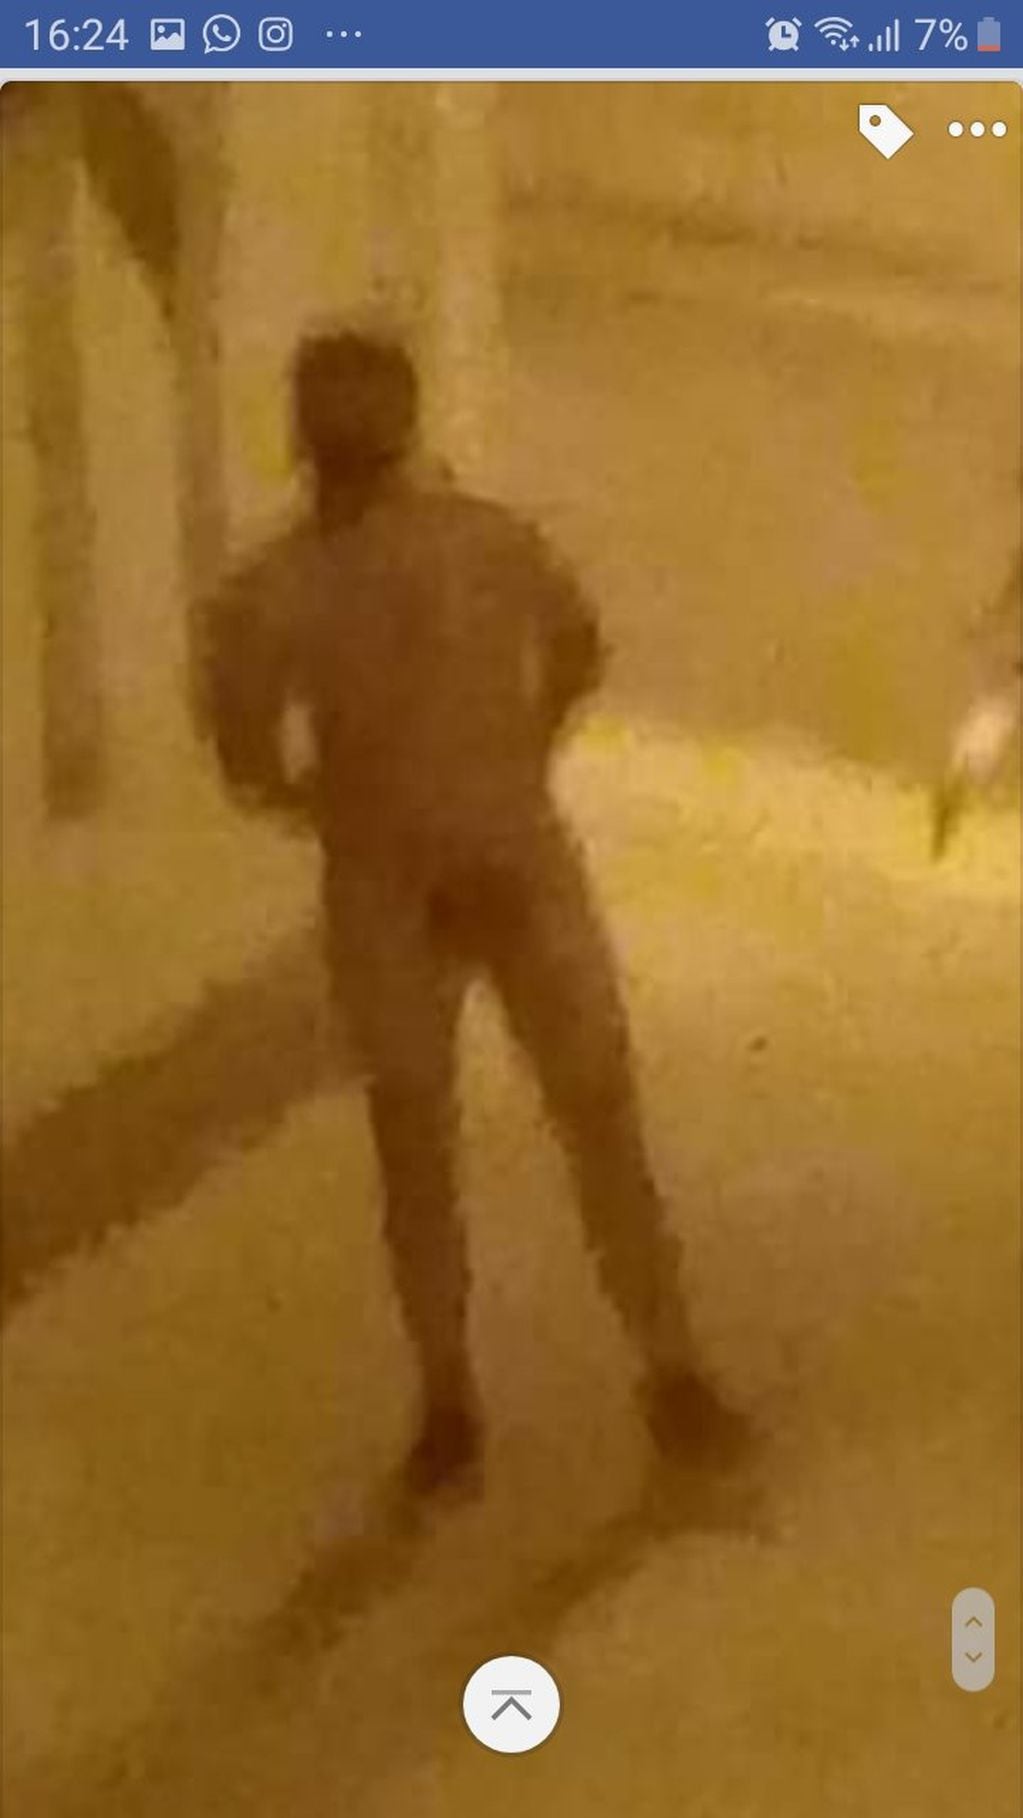 El hombre se pasea desnudo por la calle